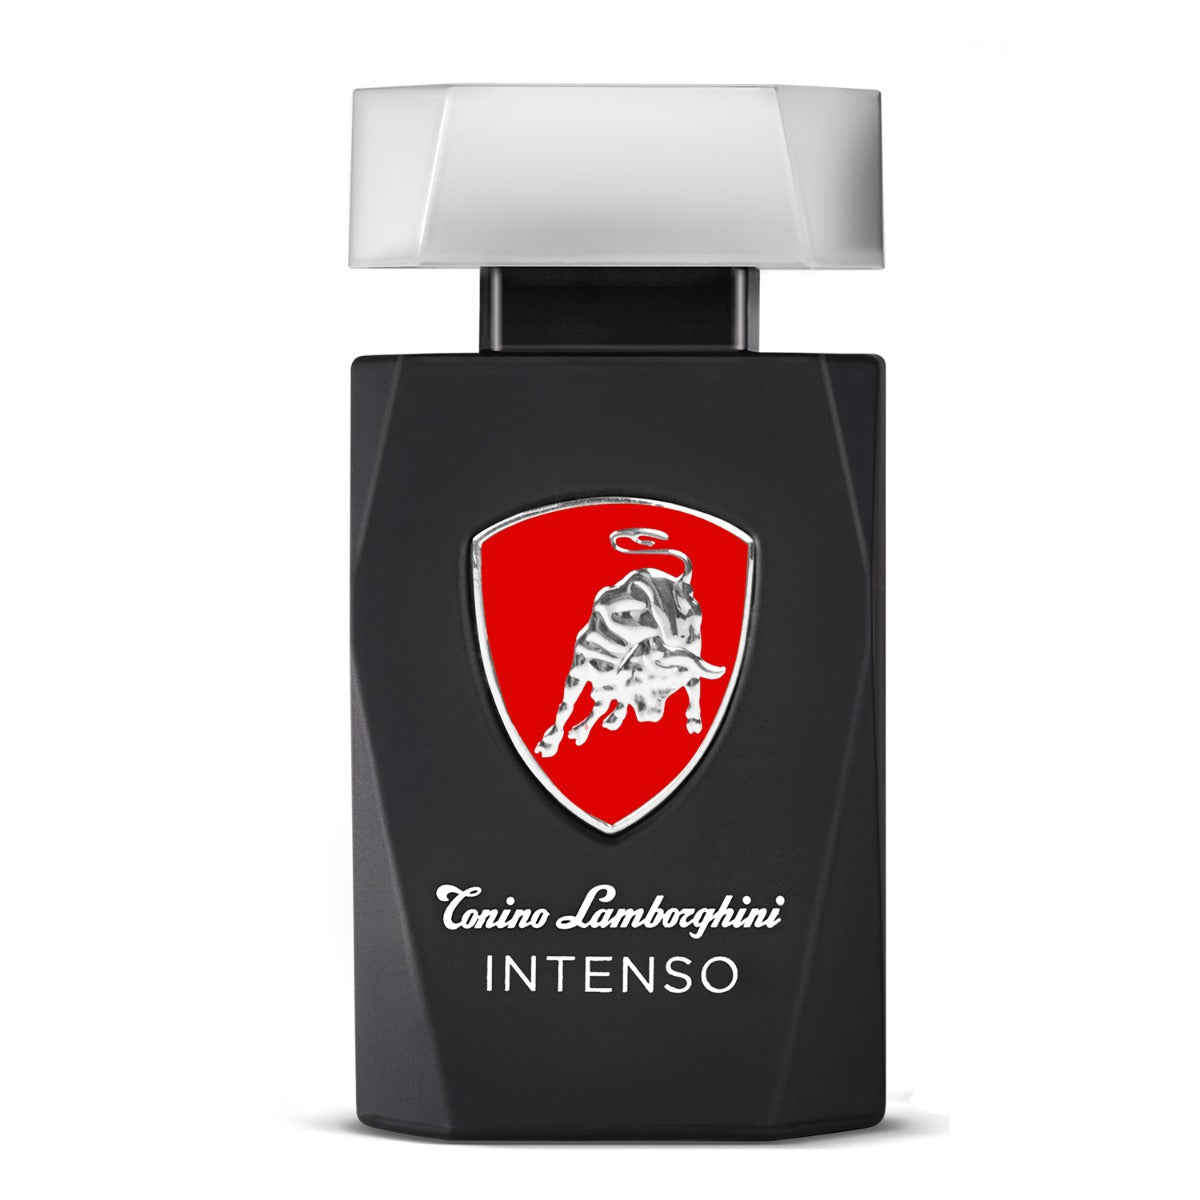 Tonino Lamborghini Intenso Edt 75ml - samawa perfumes 